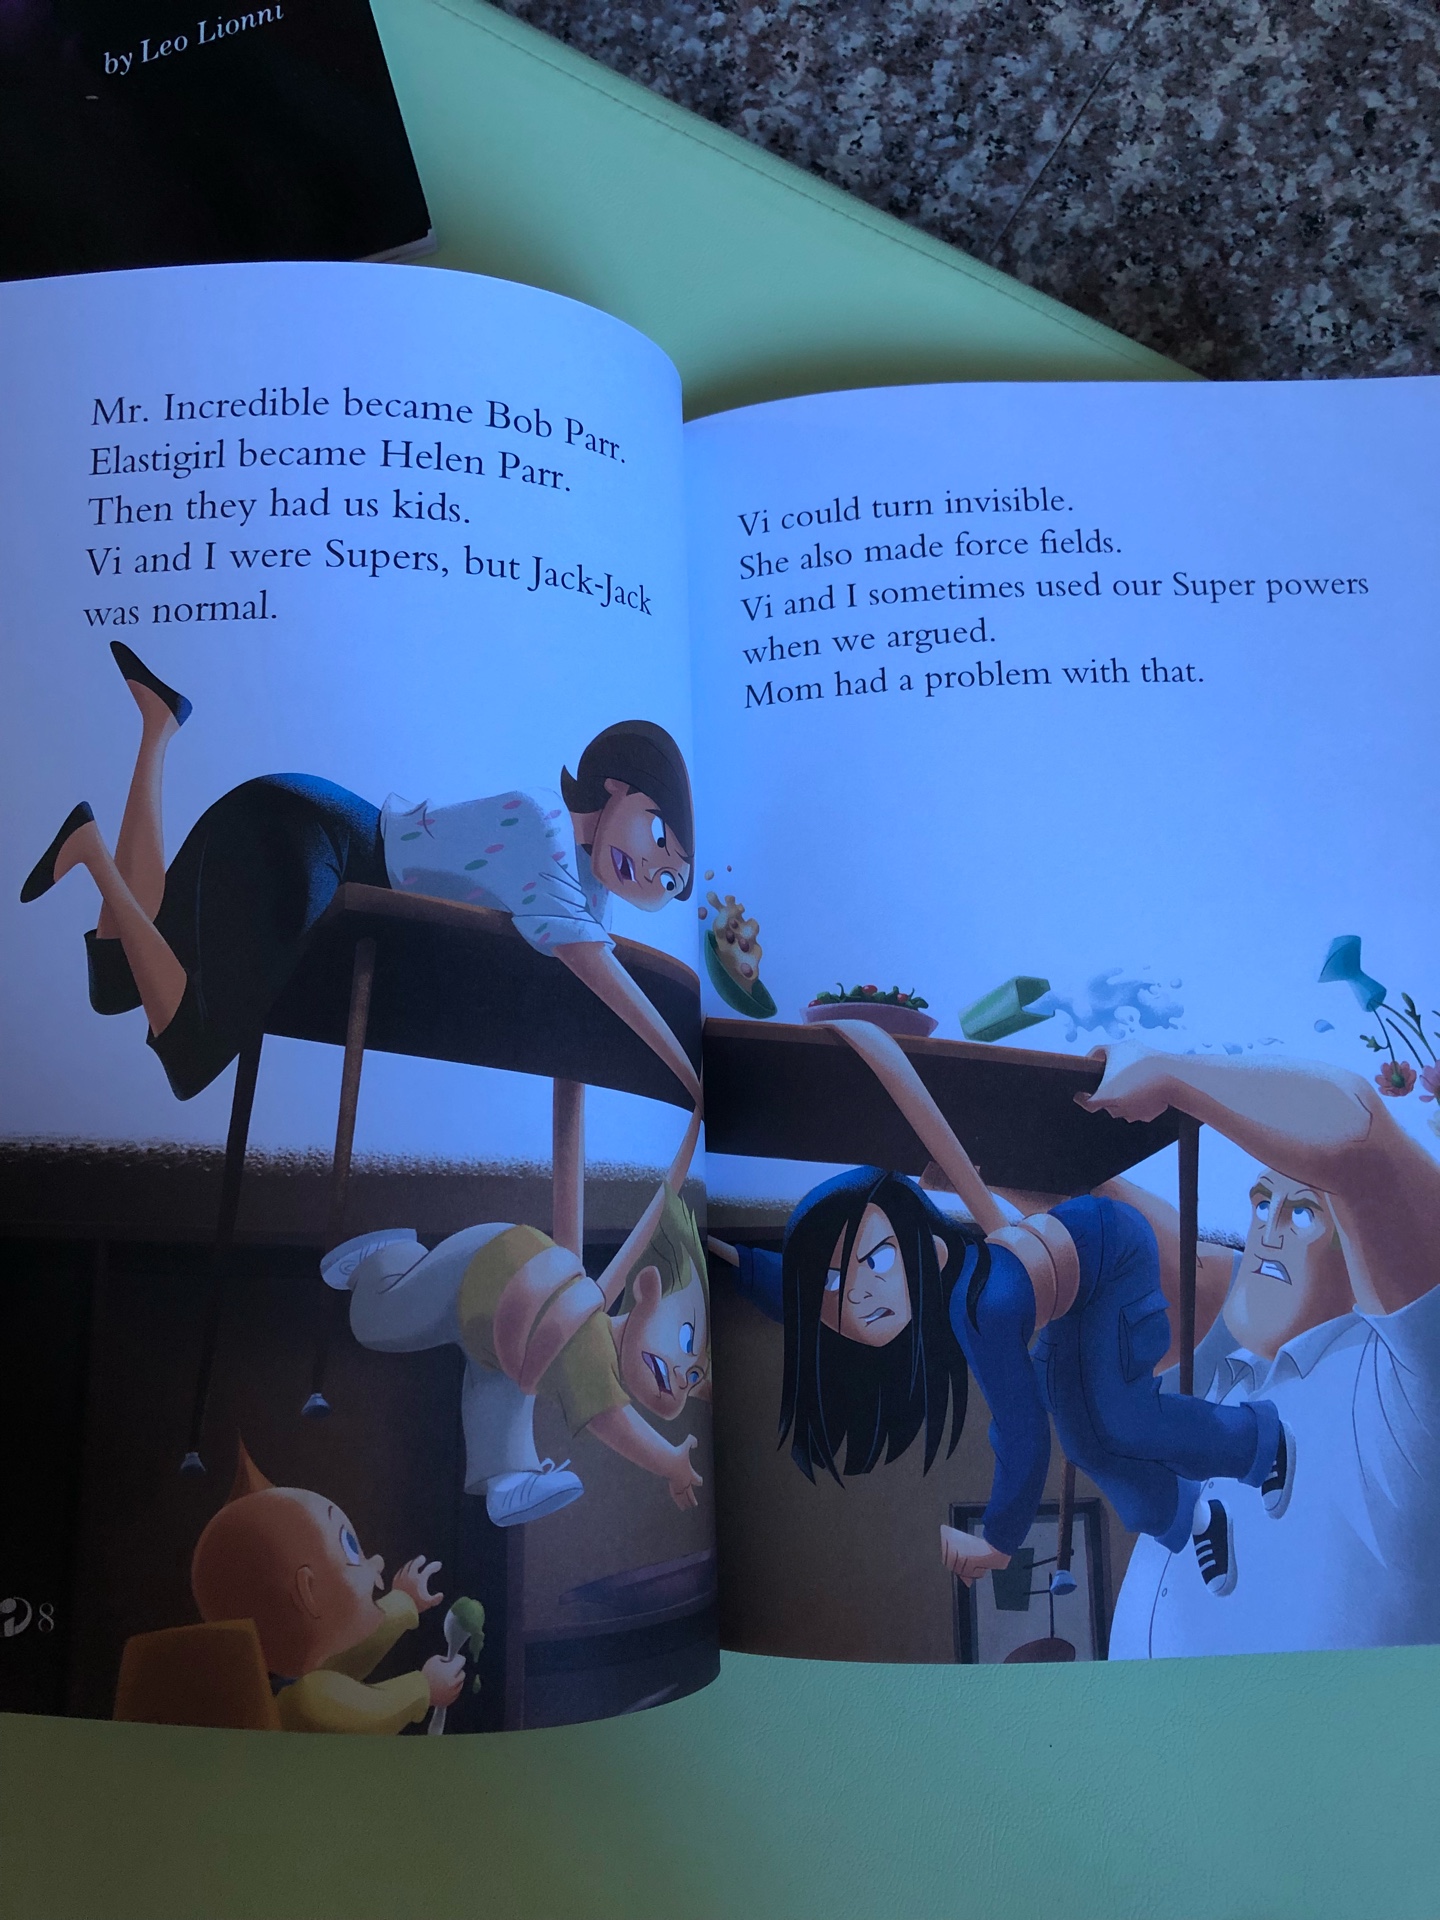 ??迪士尼动画故事英语分级读物. 第3级合辑（套装共4册），妈妈觉得这套有点难，自己看起来都费劲。。。目前也是囤货，自己先消化在给孩子读。